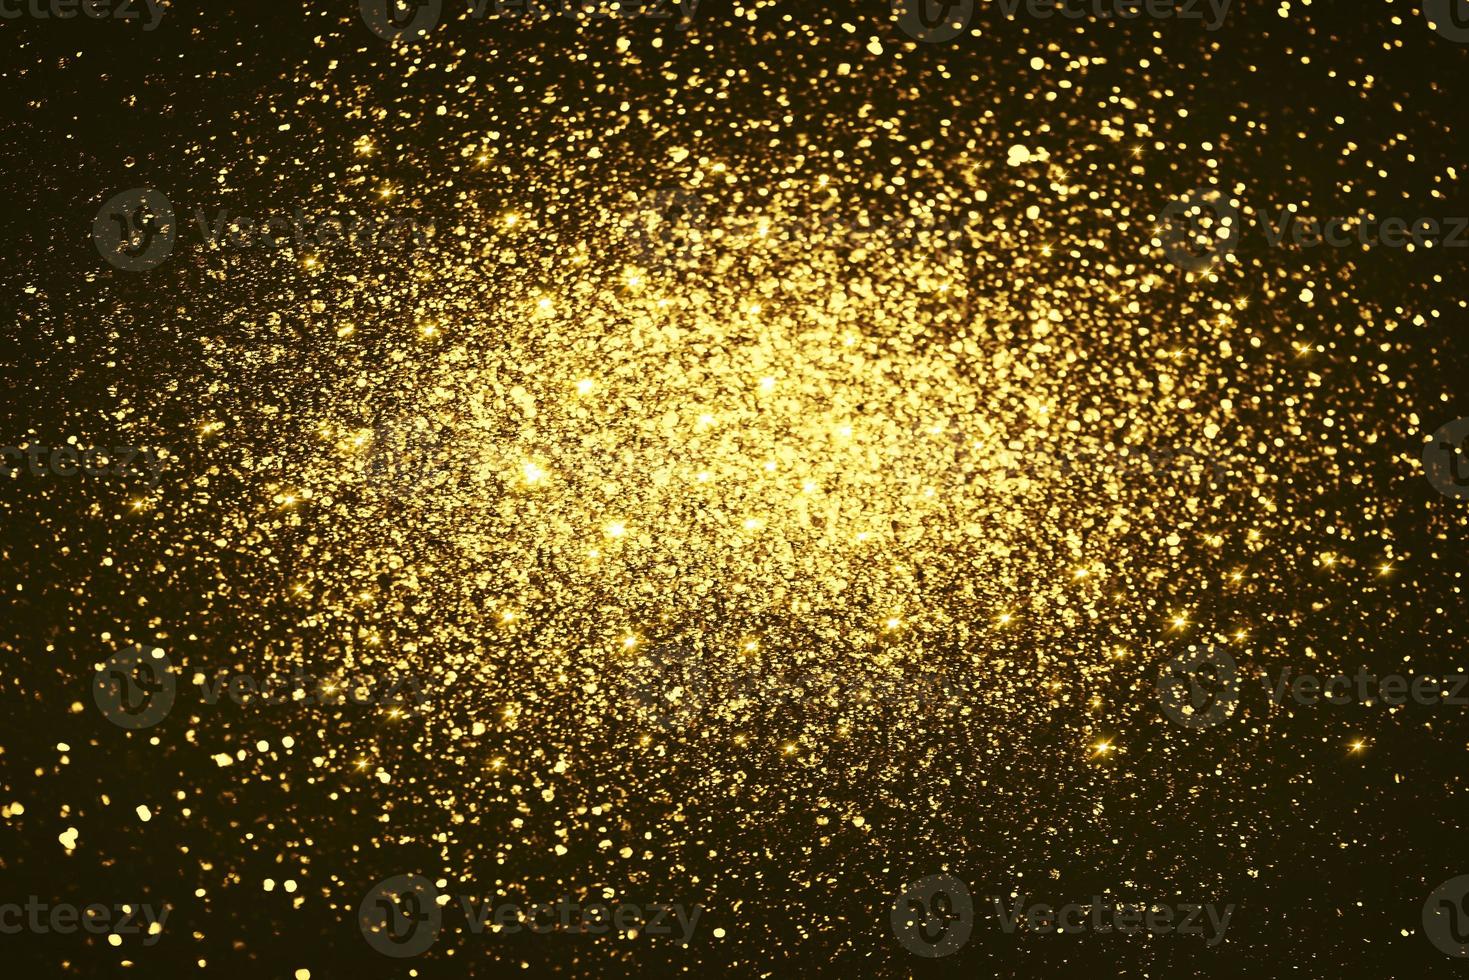 gouden glitter bokeh verlichting textuur wazig abstracte achtergrond voor verjaardag, jubileum, bruiloft, oudejaarsavond of kerst foto